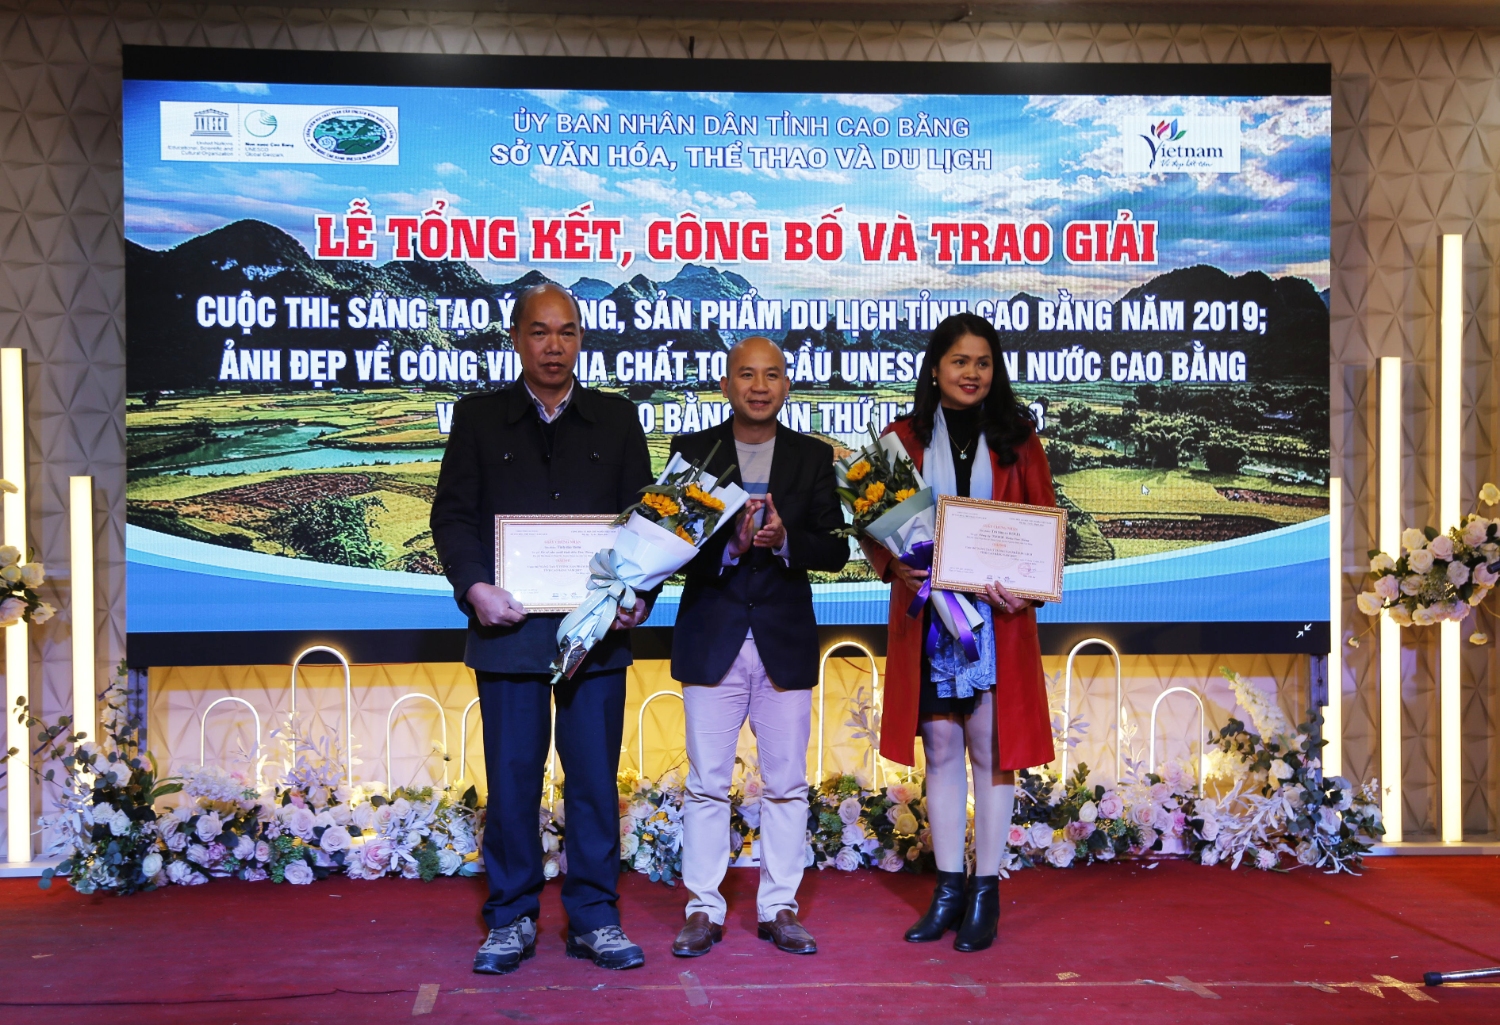 Ban tổ chức trao giải Nhì Cuộc sáng tạo ý tưởng, sản phẩm du lịch tỉnh Cao Bằng năm 2019 cho tác giả Vũ Thảo Giang (Ảnh: Trung Nguyên)